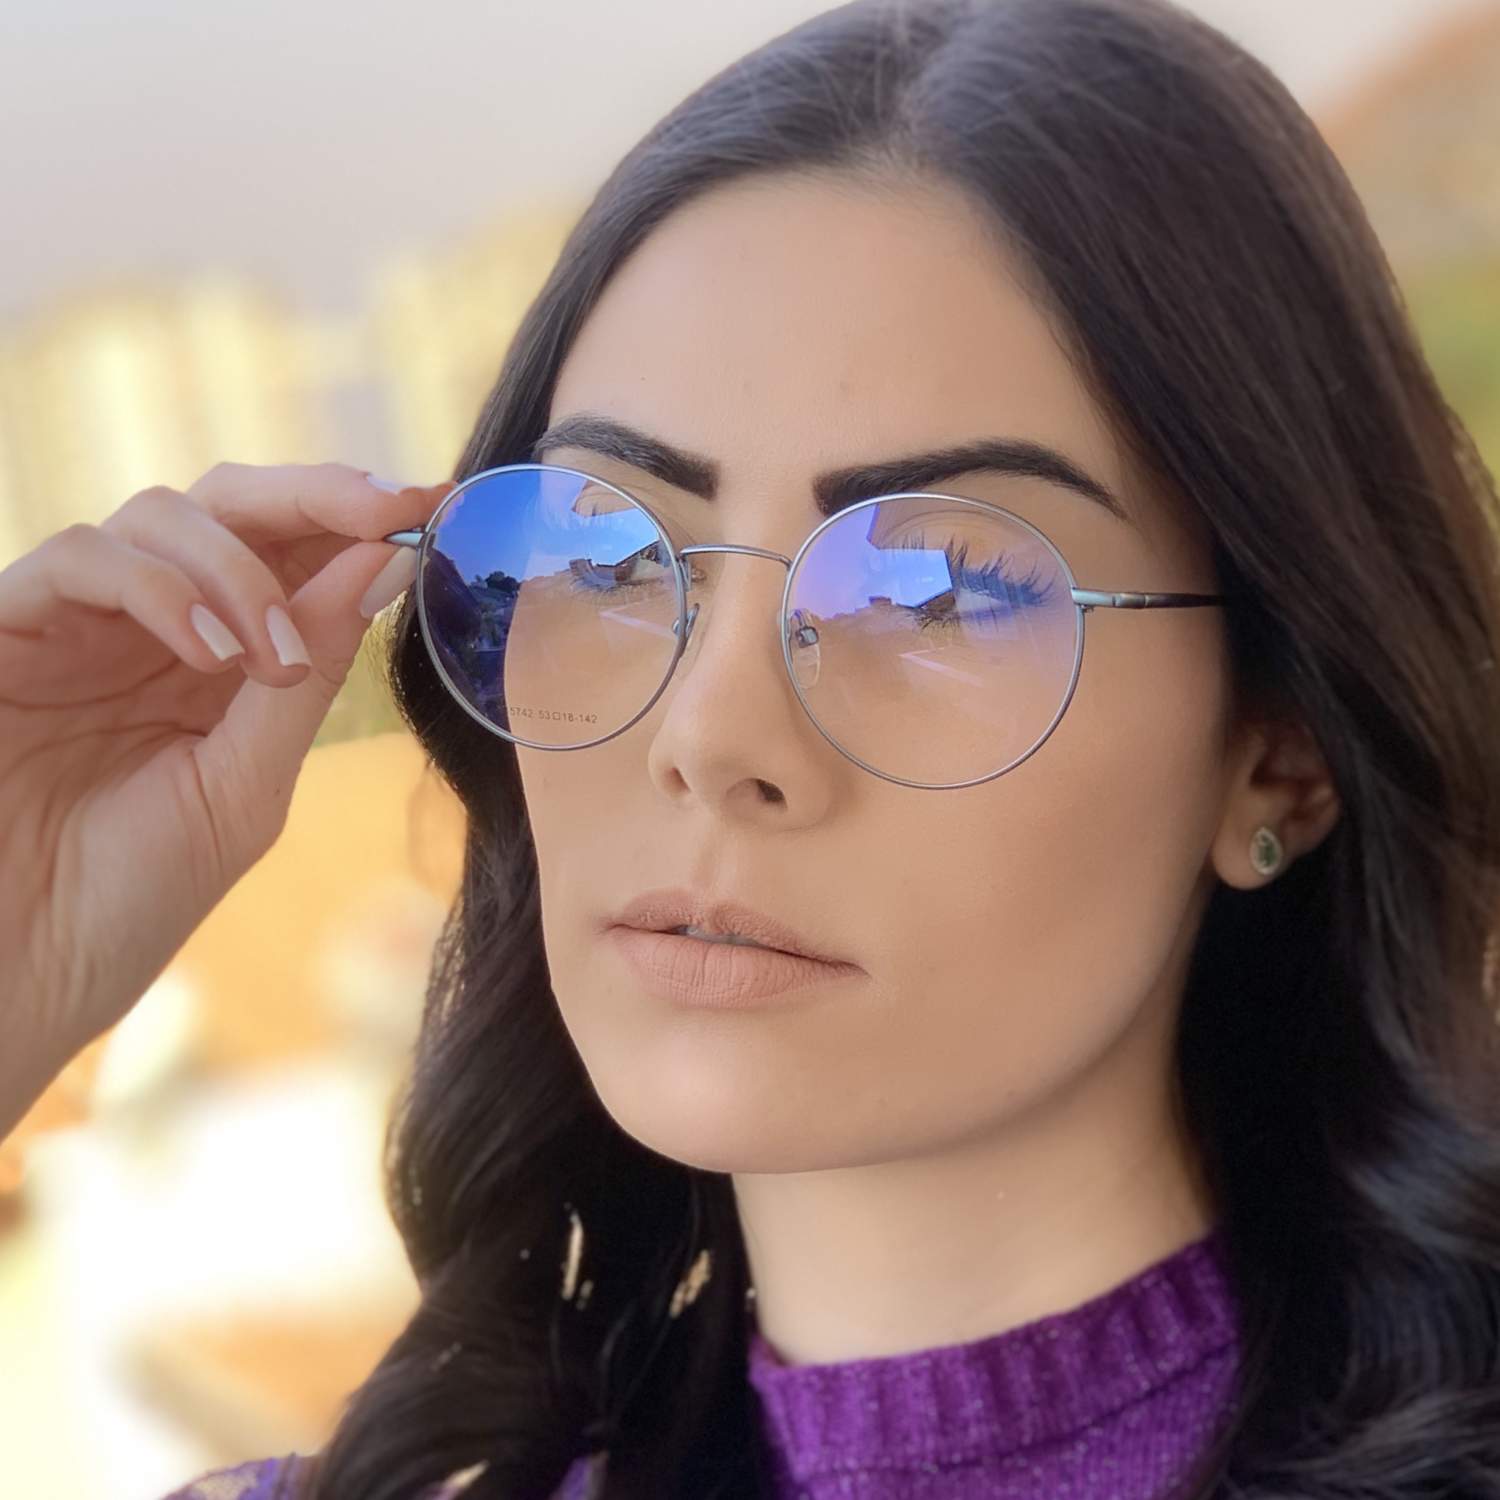 Oculos da juliette bbb - compre online, ótimos preços